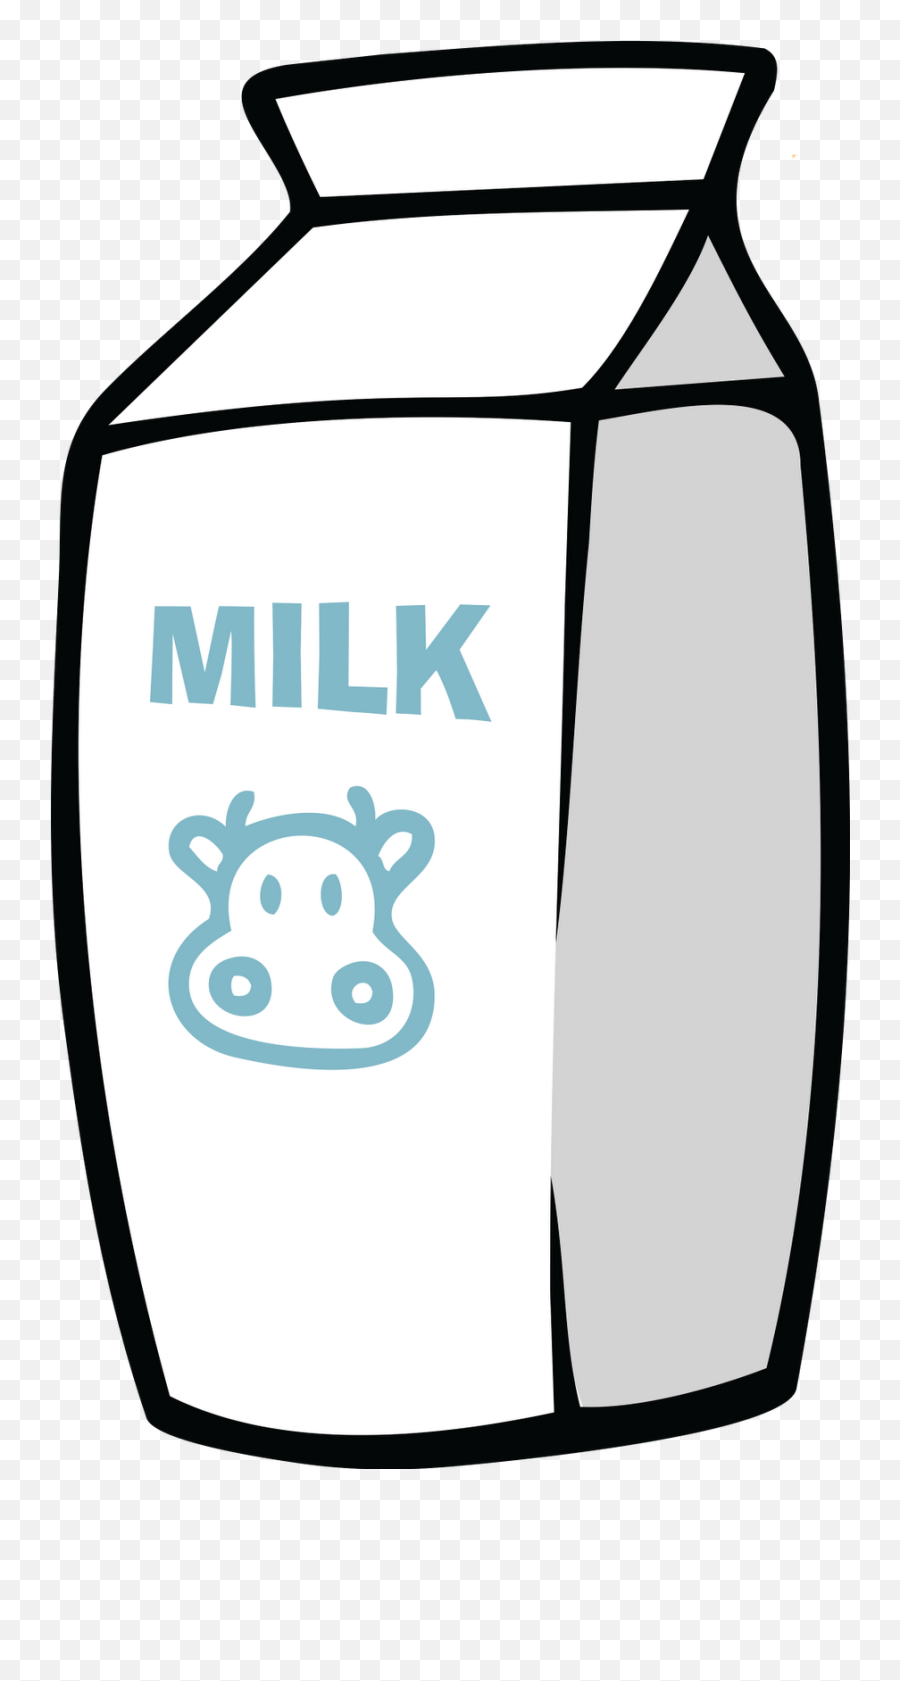 Milk Carton - Transparent Background Milk Carton Clipart Emoji,Milk Carton Png